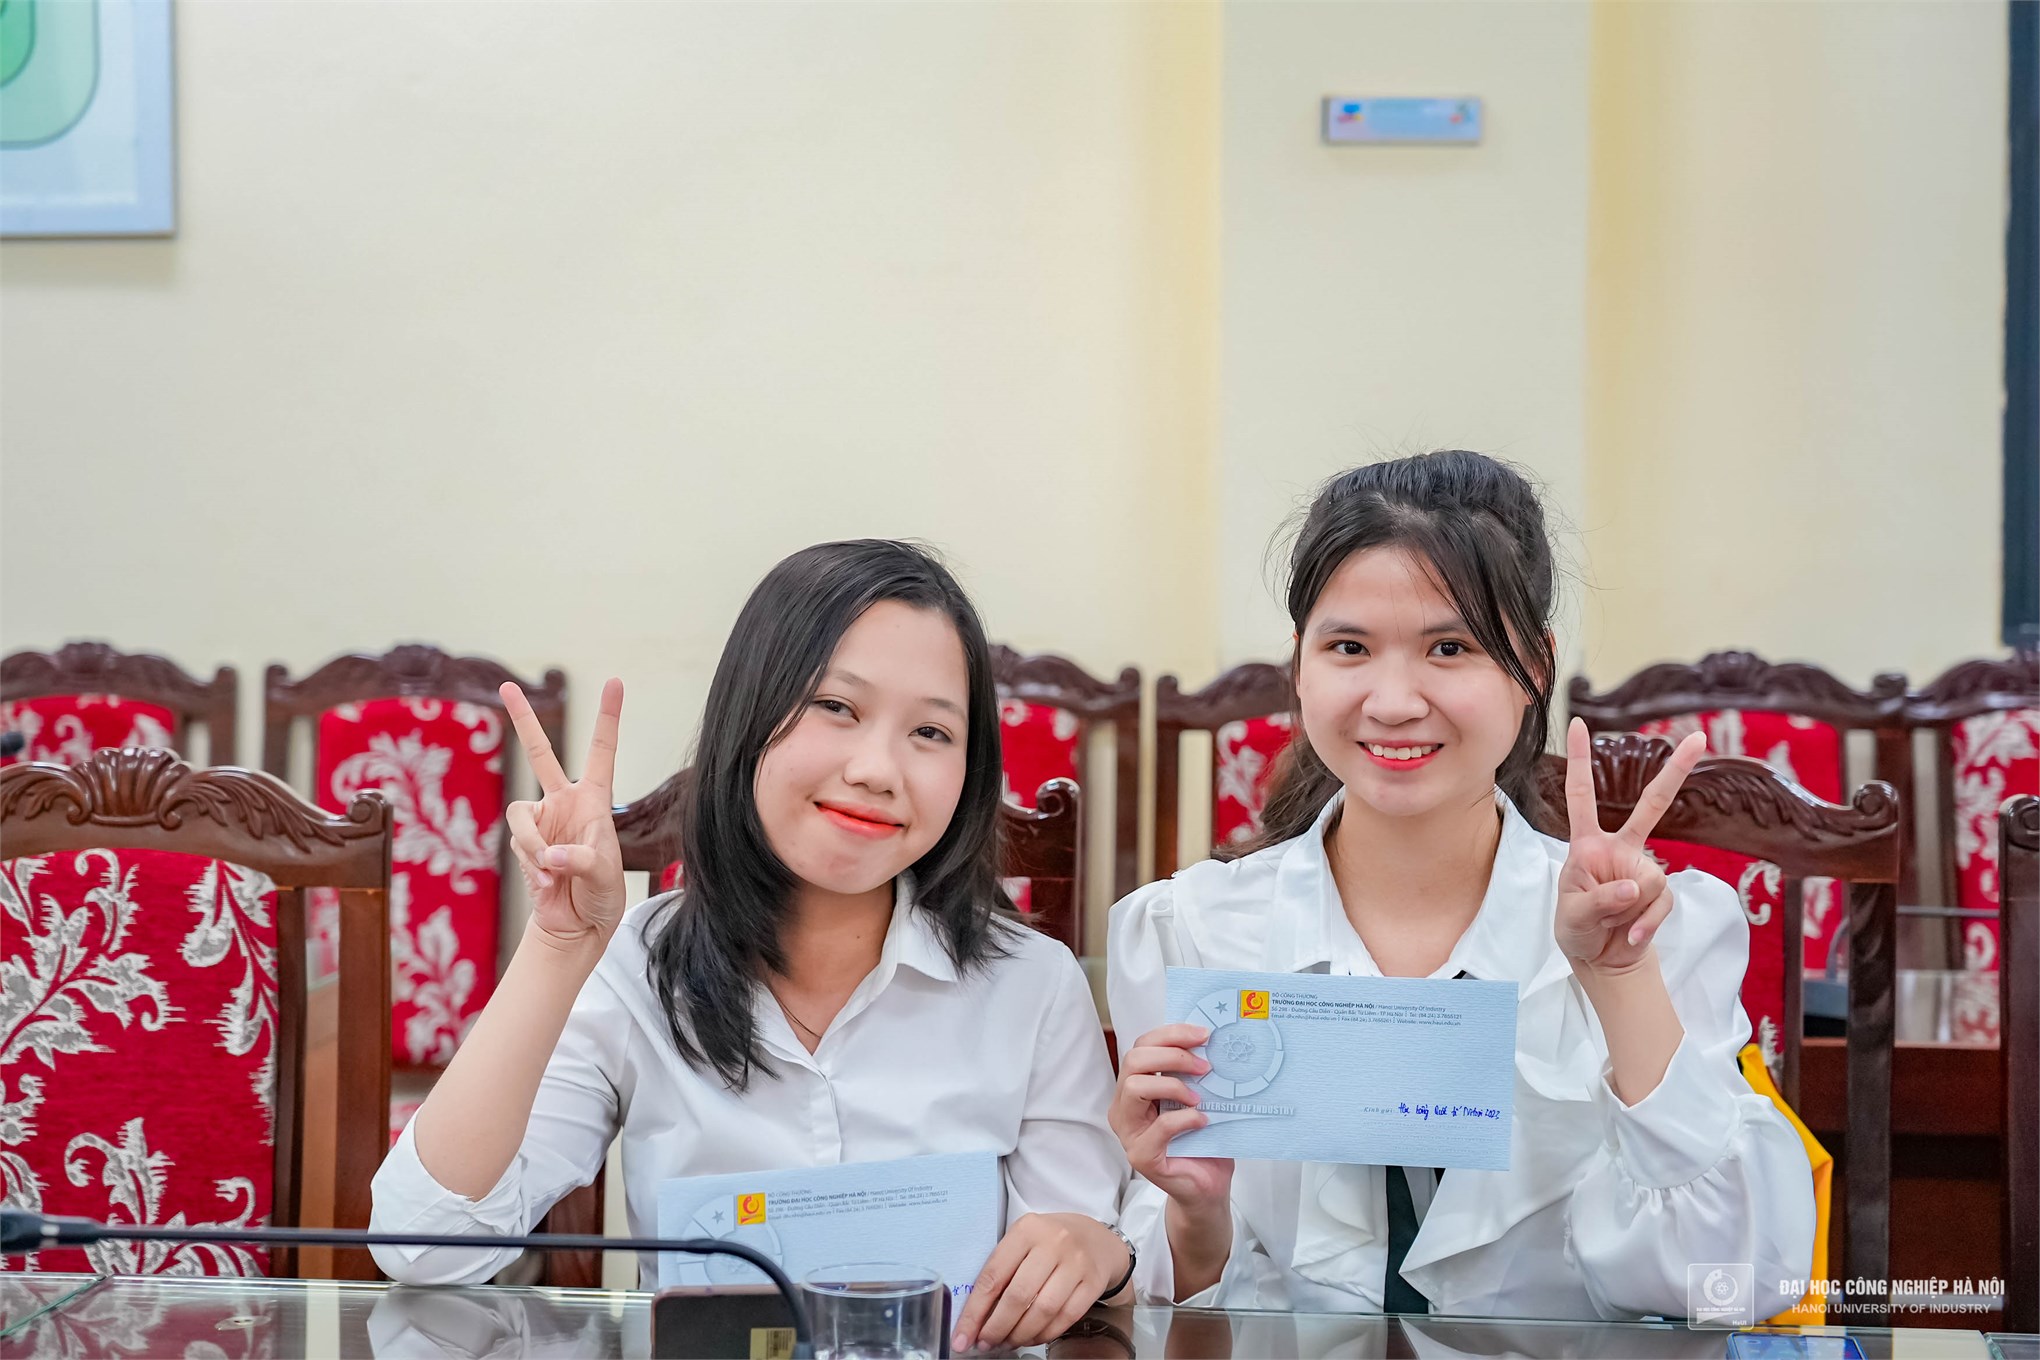 20 sinh viên Đại học Công nghiệp Hà Nội nhận học bổng Quốc tế Nitori